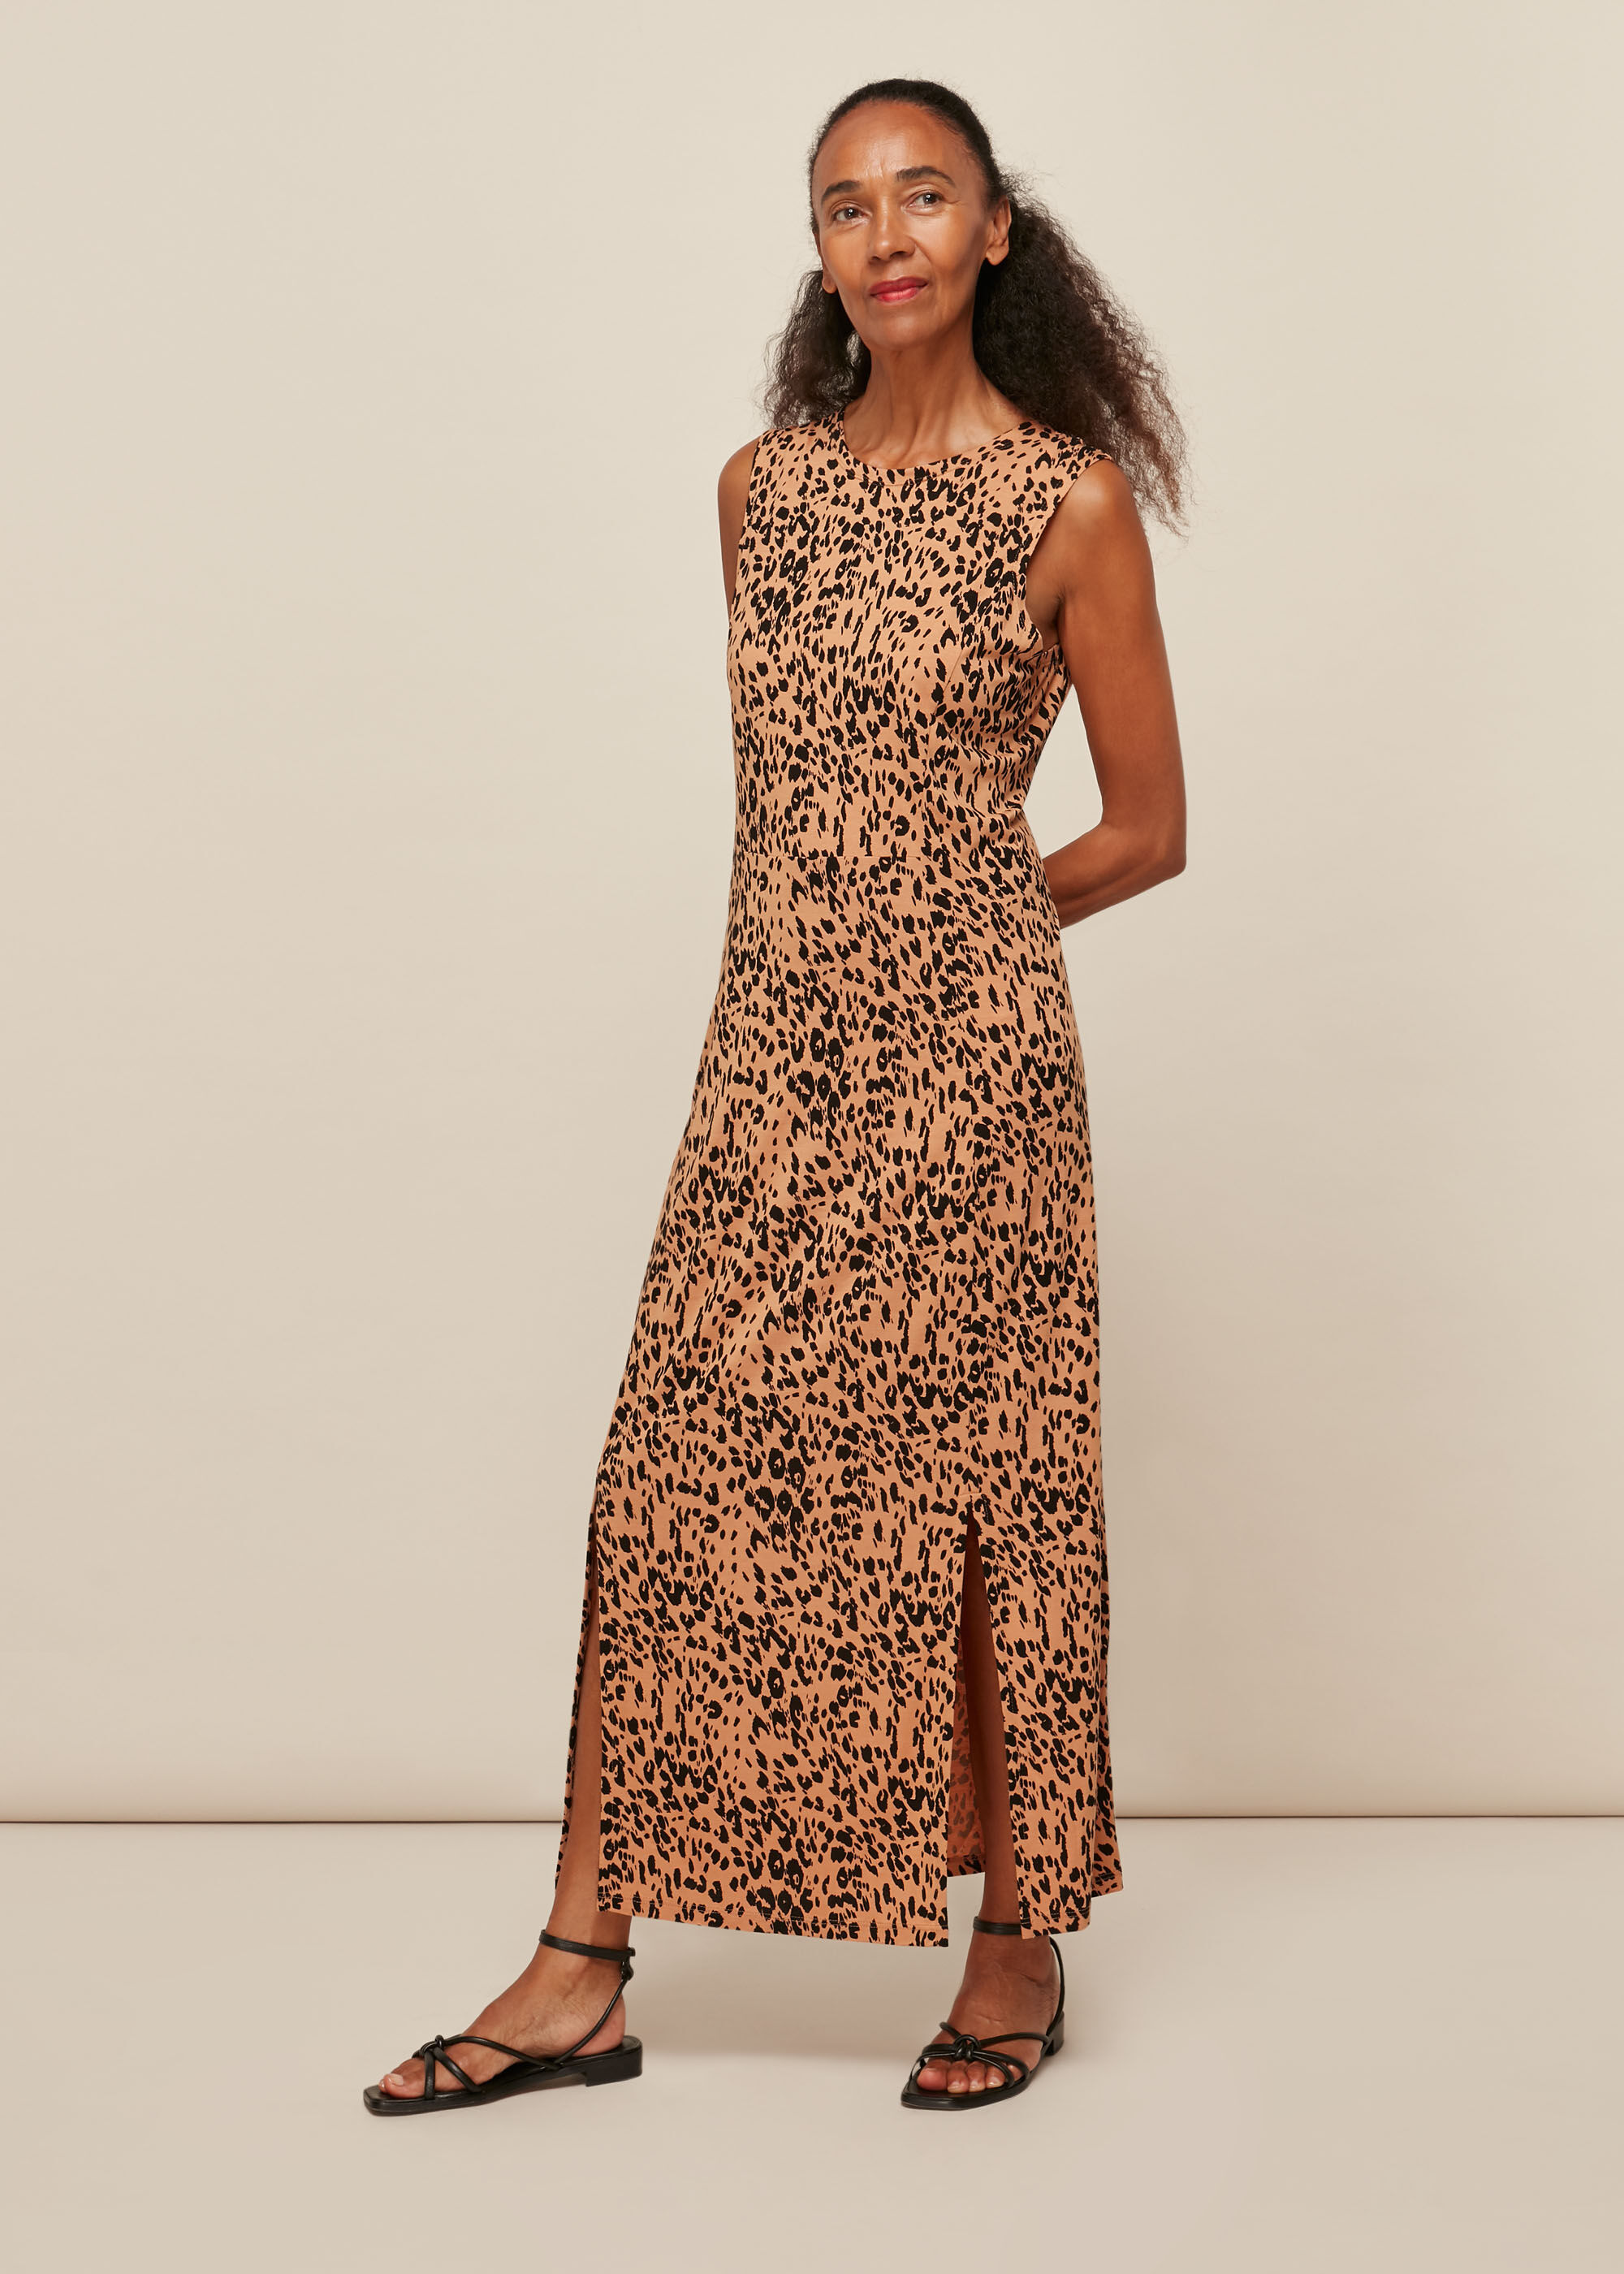 Leopard Print Jersey Safari Print Dress 